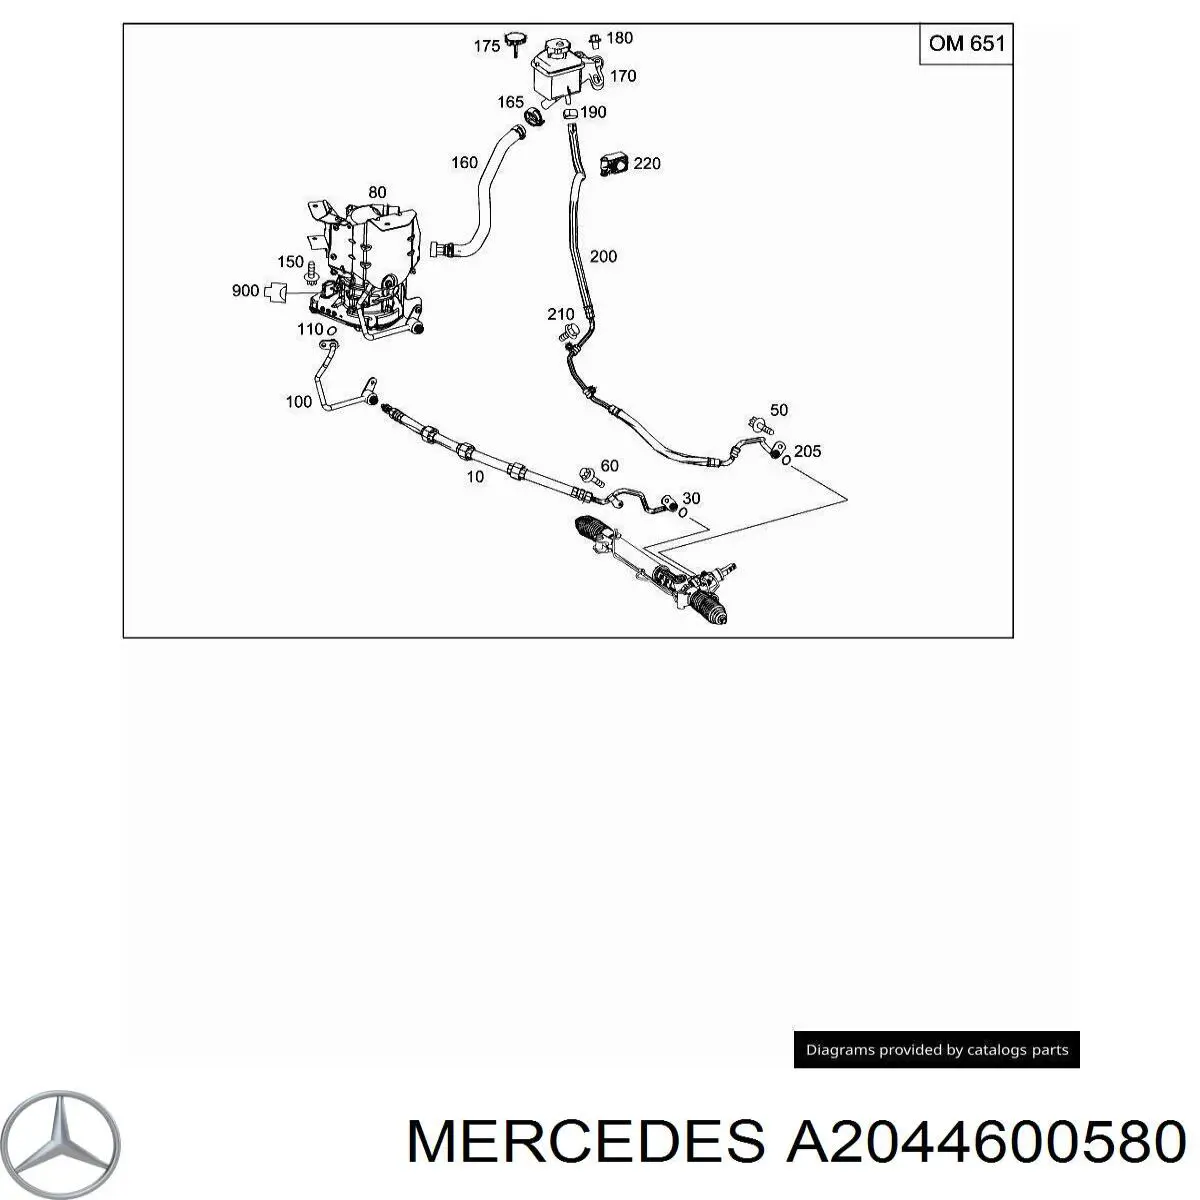 A2044600680 Mercedes bomba da direção hidrâulica assistida